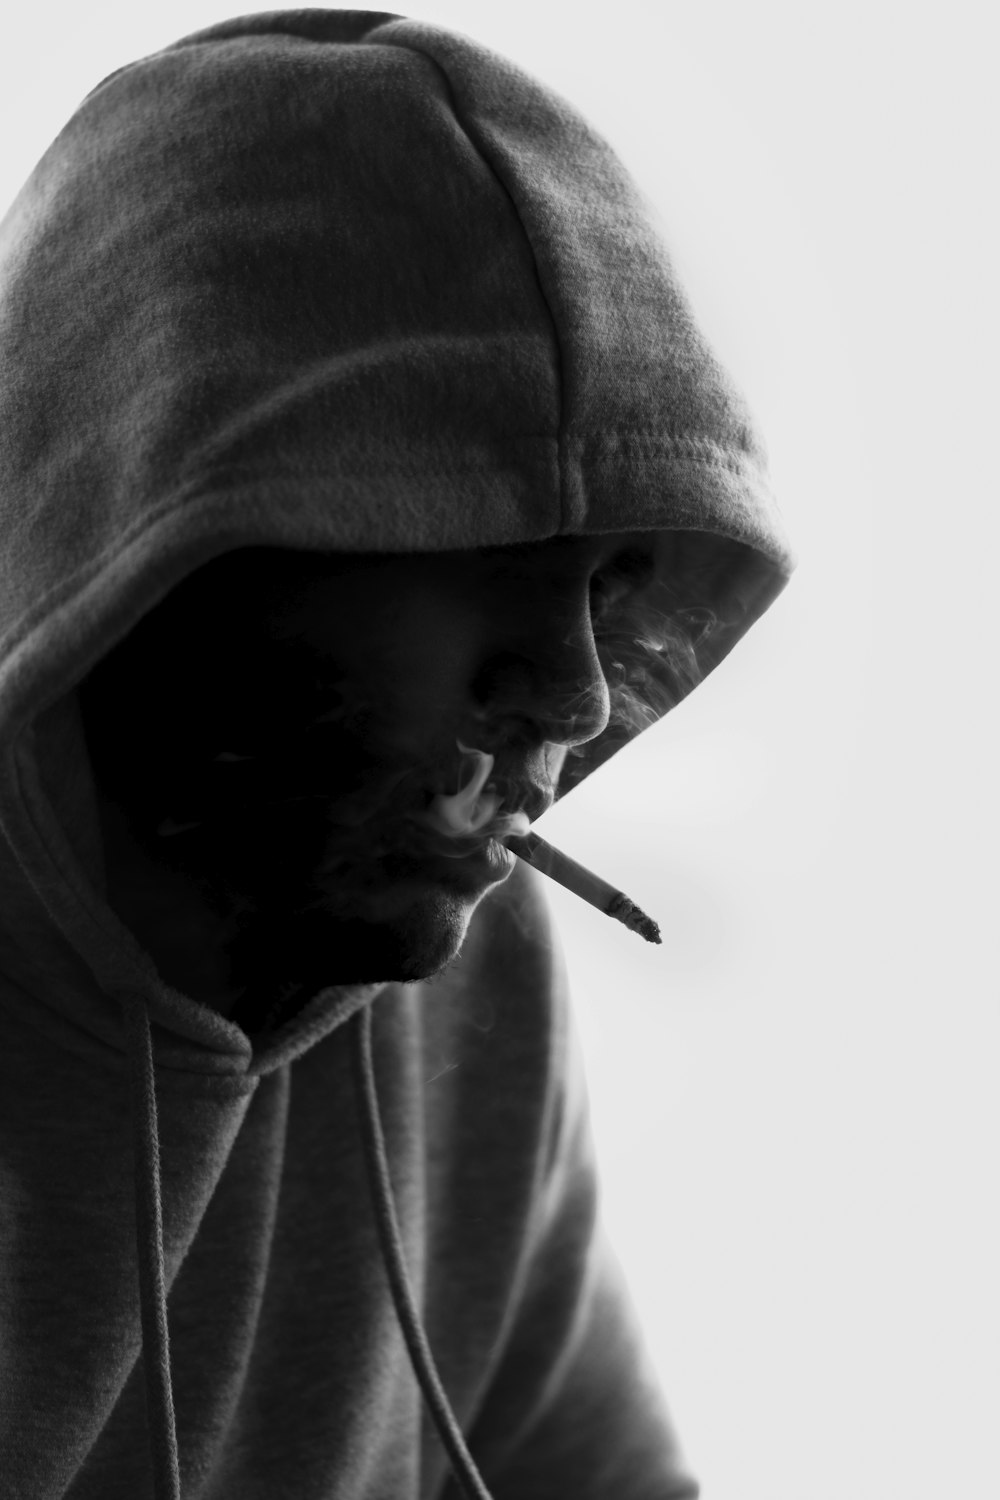 man in gray hoodie smoking cigarette